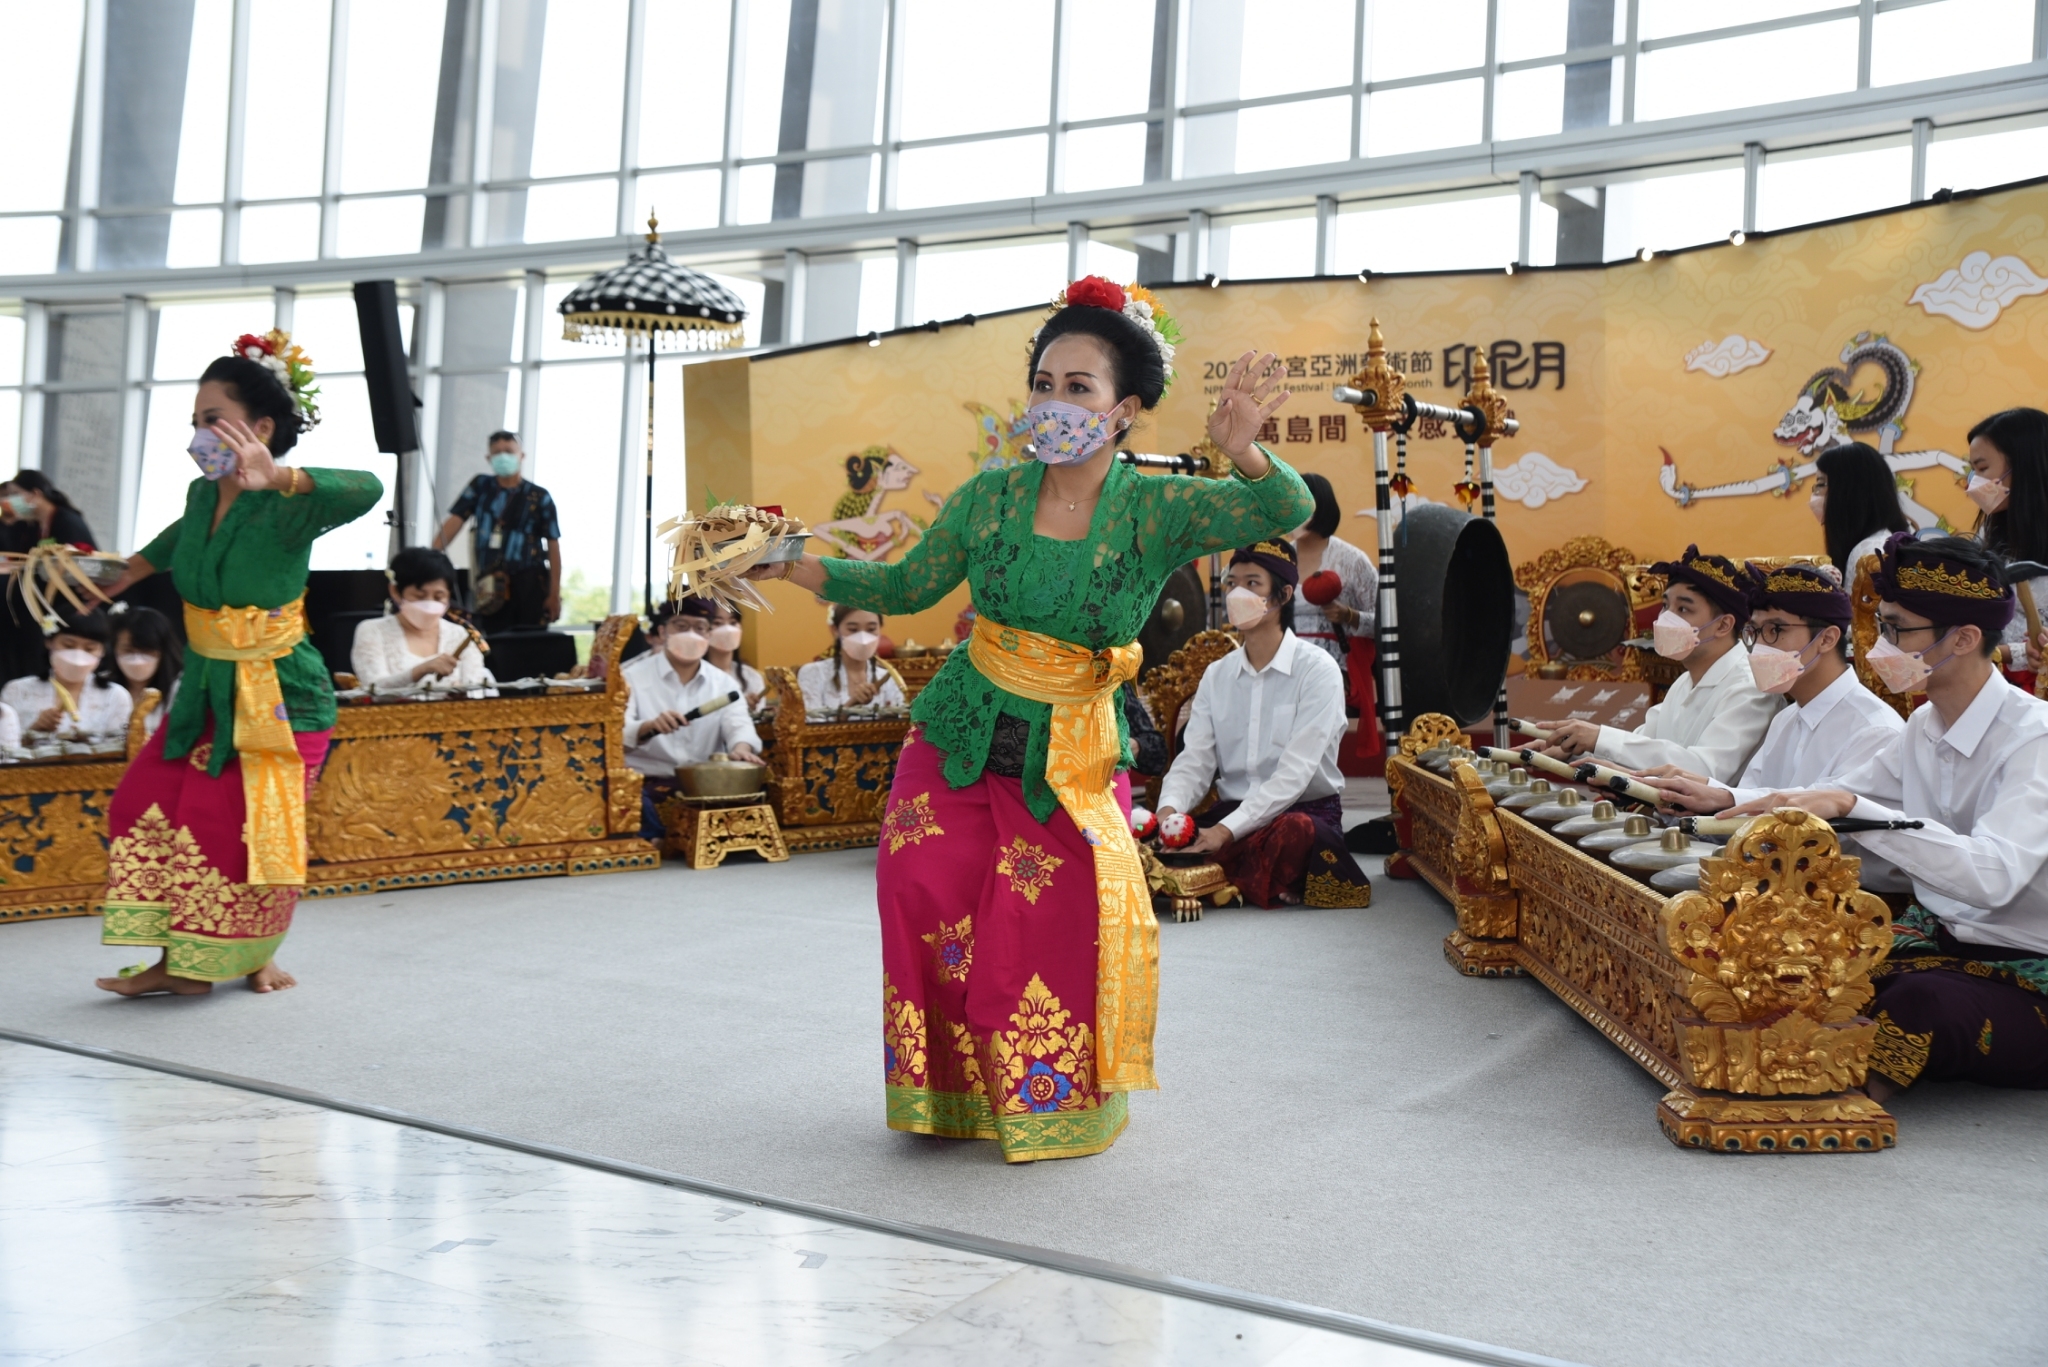 พิพิธภัณฑ์พระราชวังแห่งชาติ สาขาภาคใต้ ส่งเสริมวัฒนธรรมชาวอินโดนีเซีย ผู้ชมสามารถเข้าร่วมงานได้ตั้งแต่วันที่ 2 ตุลาคม ภาพจาก／พิพิธภัณฑ์พระราชวังแห่งชาติ สาขาภาคใต้